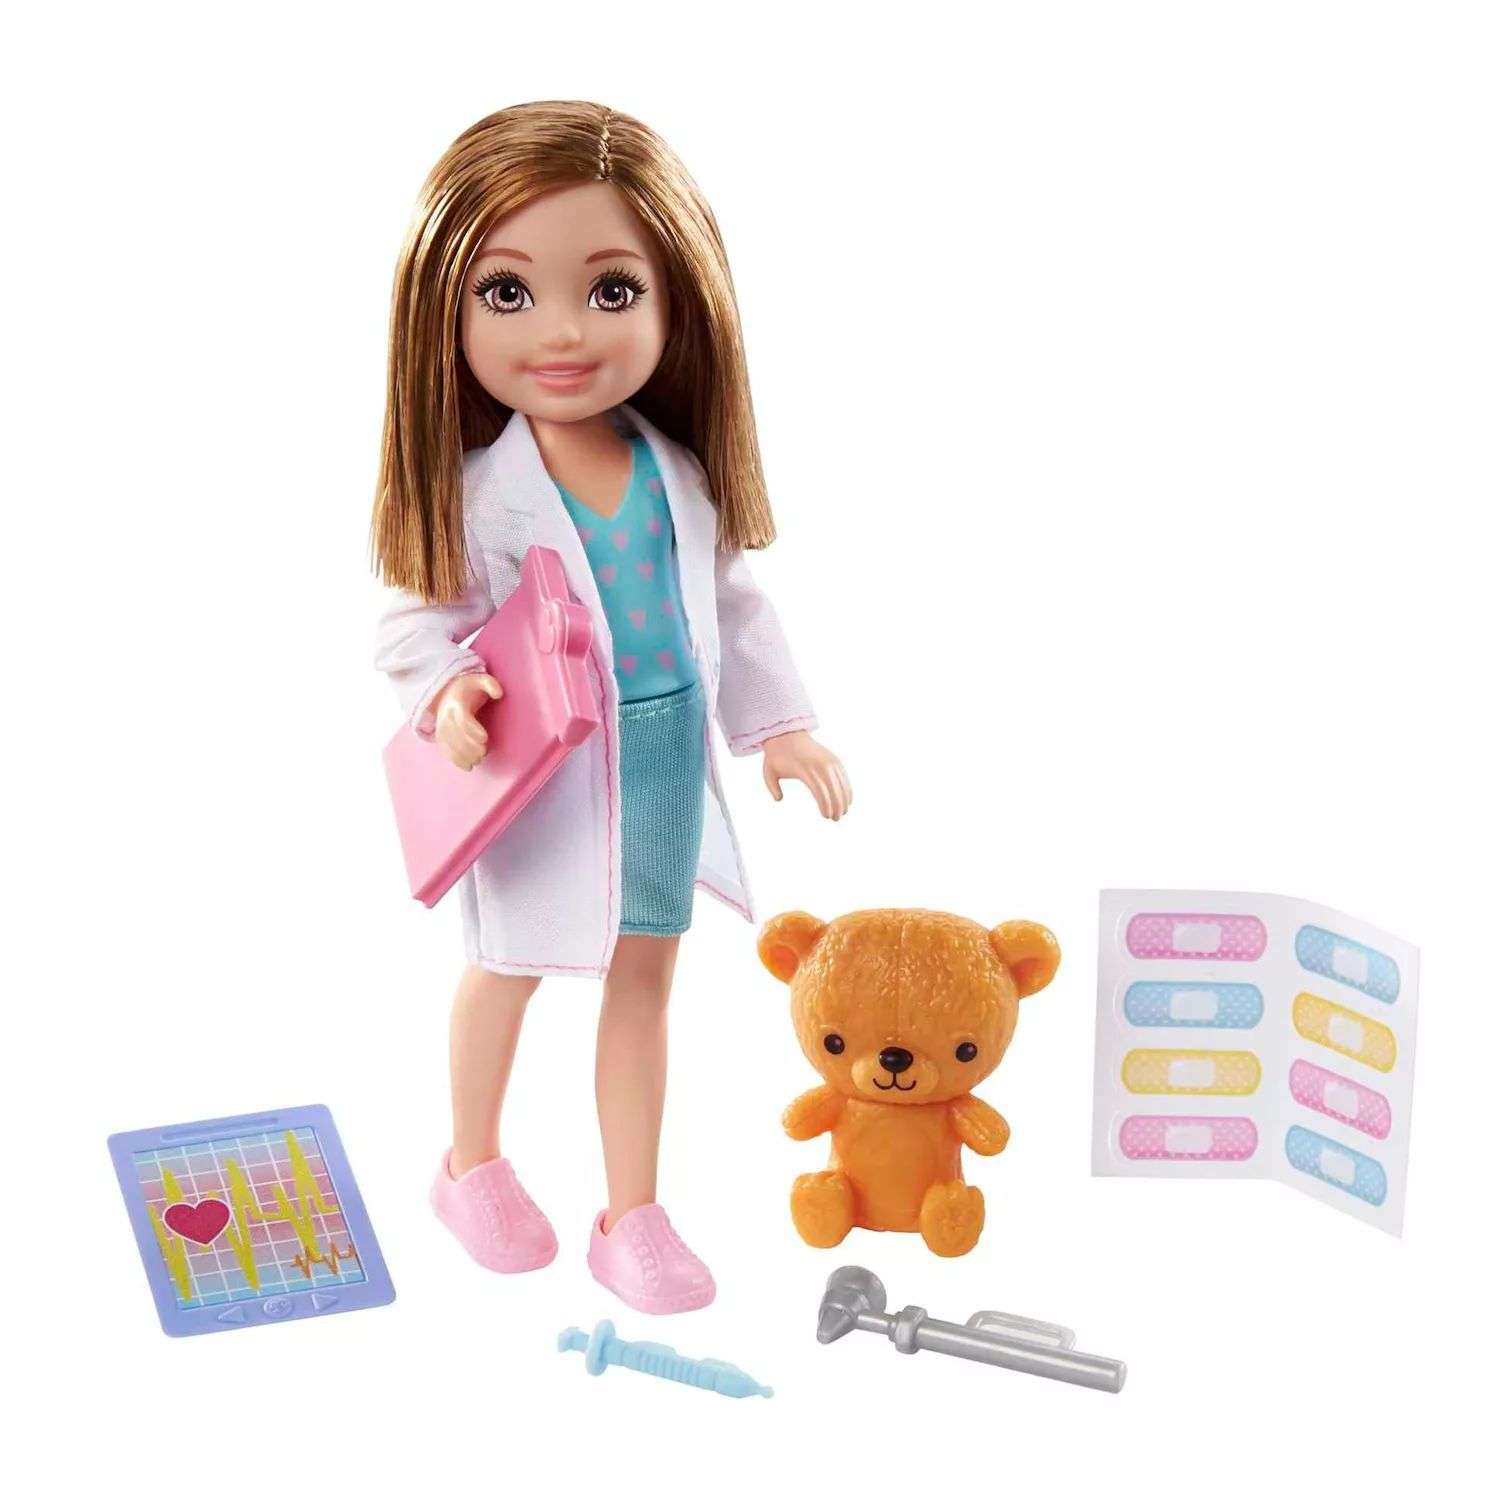 Набор игровой Barbie Карьера Челси Доктор кукла и аксессуары GTN88 GTN88 - фото 1